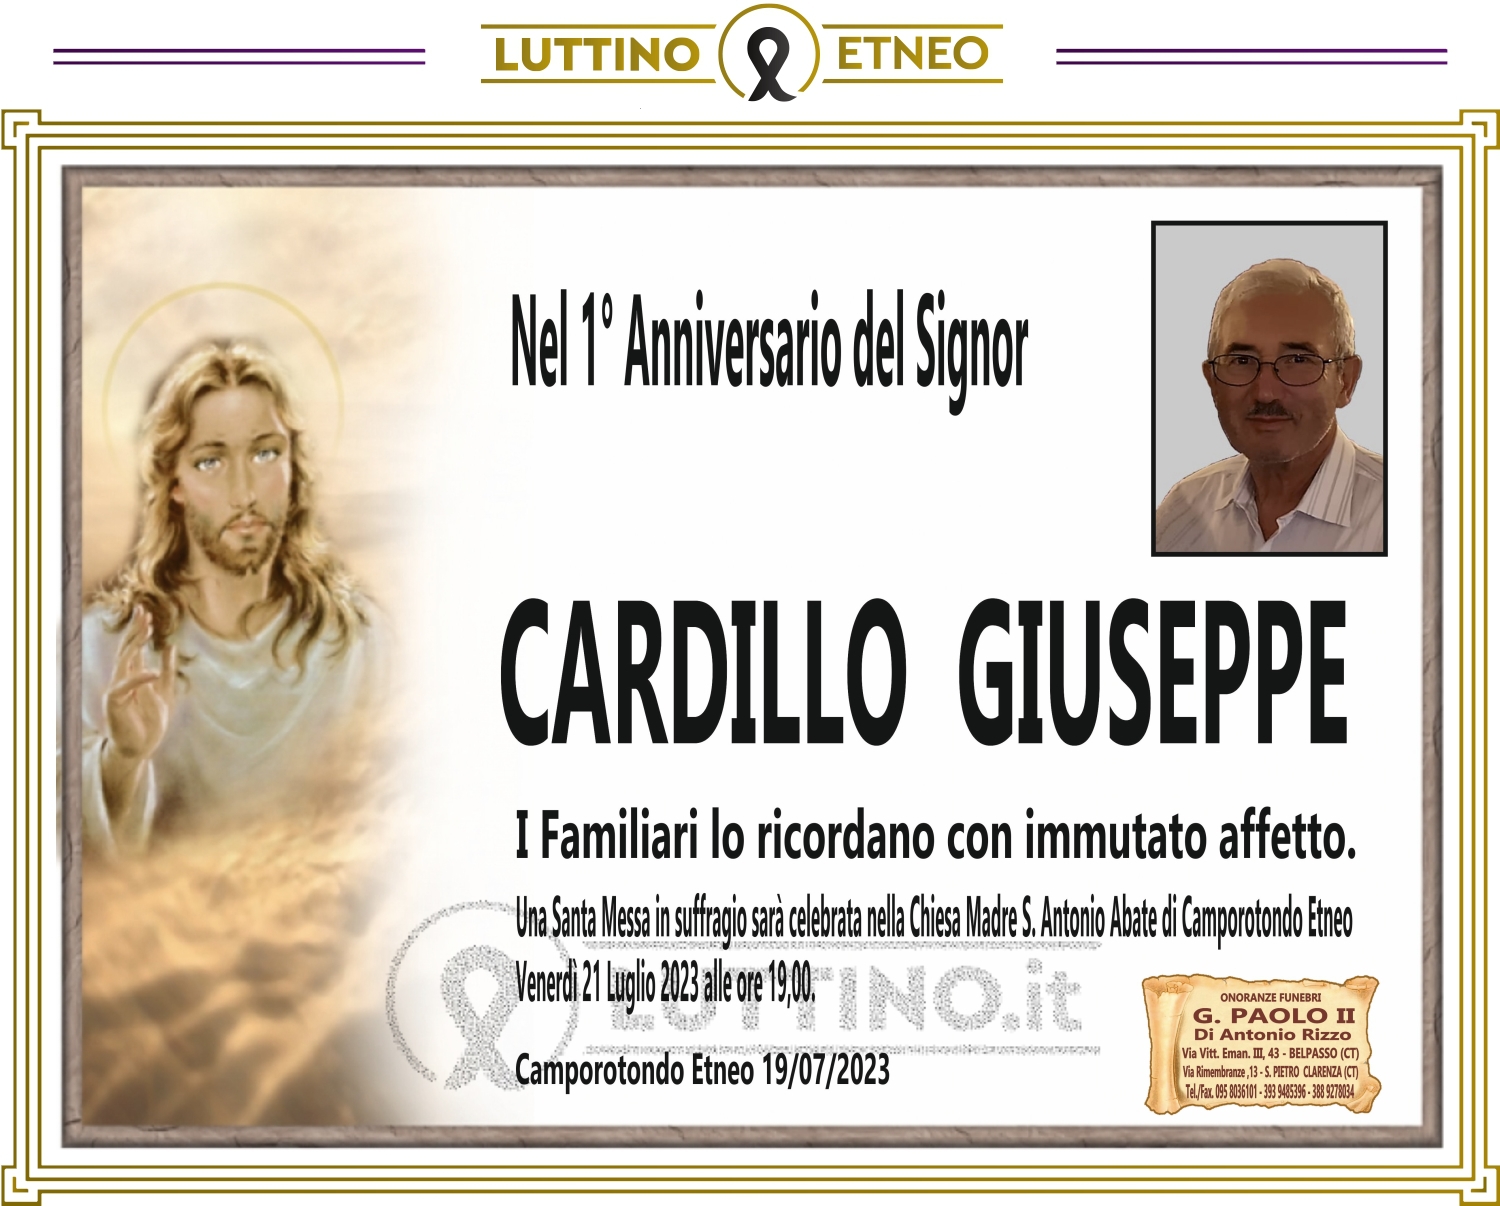 Giuseppe  Cardillo